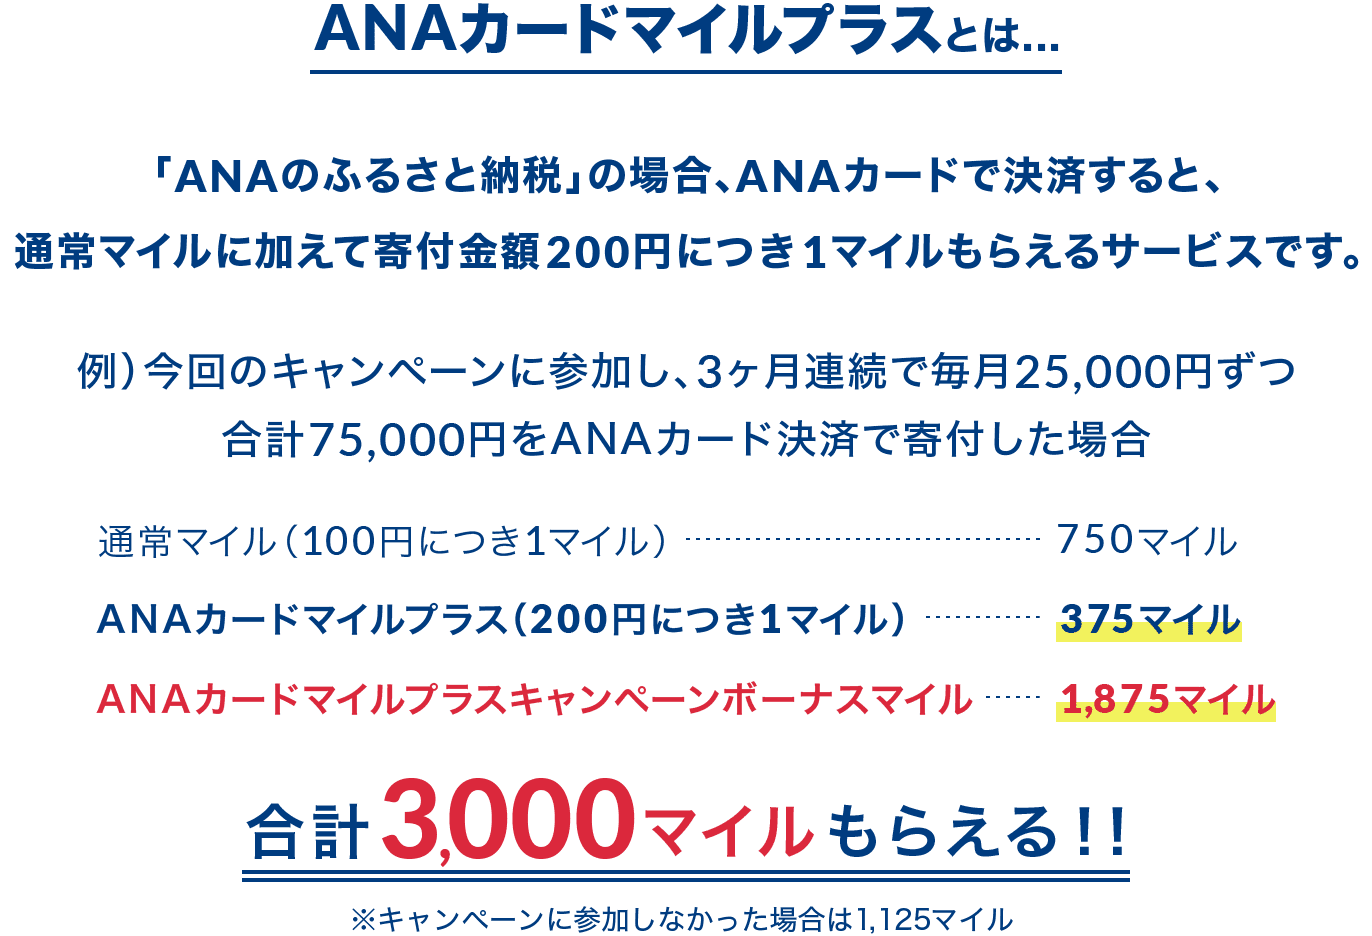 ANAカードマイルプラスとは... 「ANAのふるさと納税」の場合、ANAカードで決済すると、通常マイルに加えて寄付金額200円につき1マイルもらえるサービスです。例）今回のキャンペーンに参加し、3ヶ月連続で毎月25,000円ずつ合計75,000円をANAカード決済で寄付した場合 通常マイル（100円につき1マイル）750マイル ANAカードマイルプラス（200円につき1マイル）375マイル ANAカードマイルプラスキャンペーンボーナスマイル1,875マイル 合計3,000マイルもらえる！！ ※キャンペーンに参加しなかった場合は1,125マイル